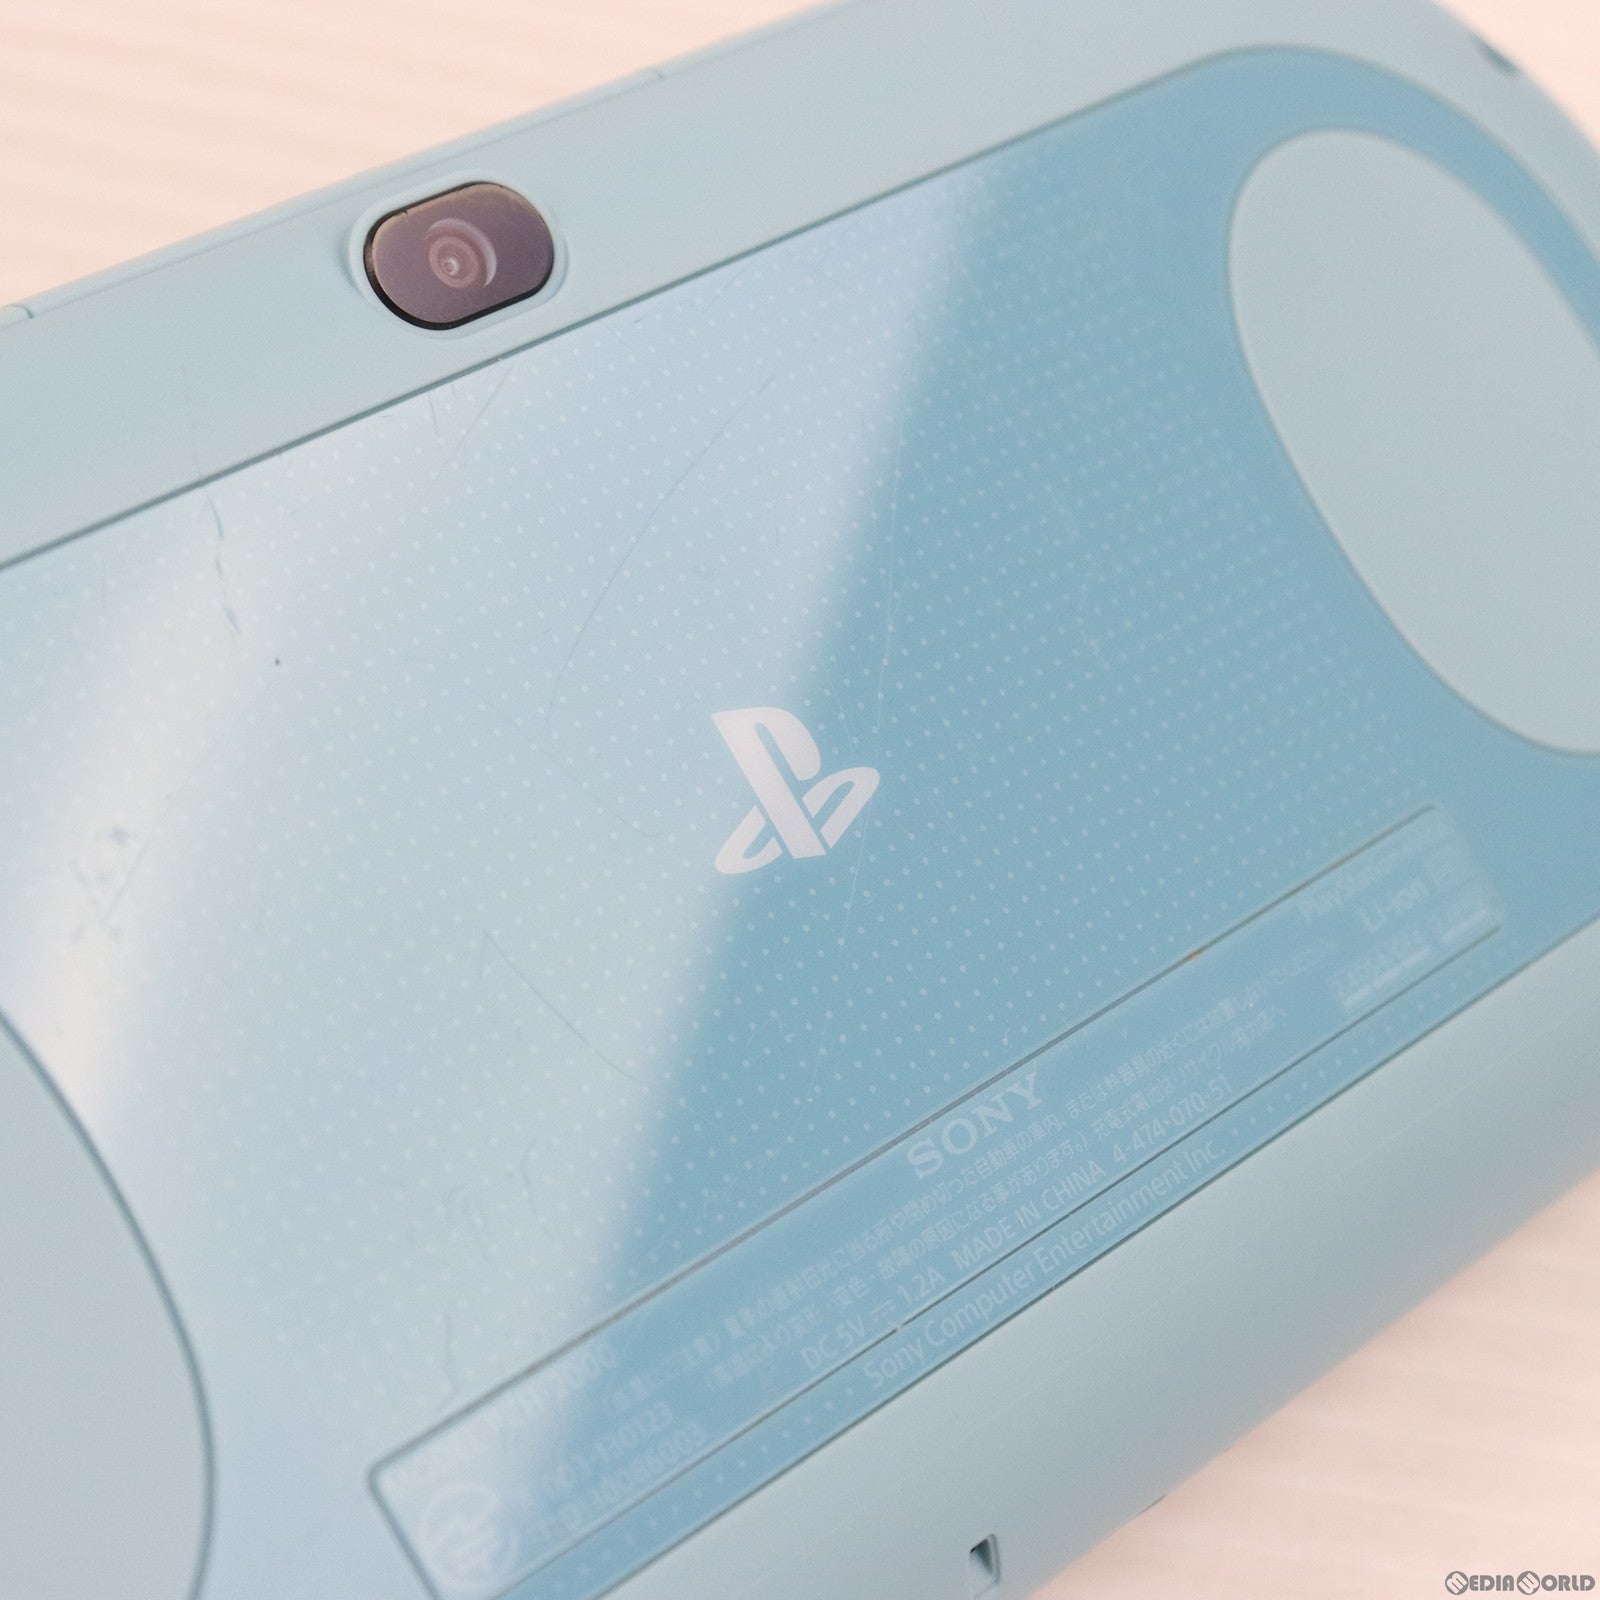 【中古即納】[本体][PSVita]PlayStation Vita(プレイステーションVita) Wi-Fiモデル ライトブルー/ホワイト(PCH-2000ZA14)(20131010)